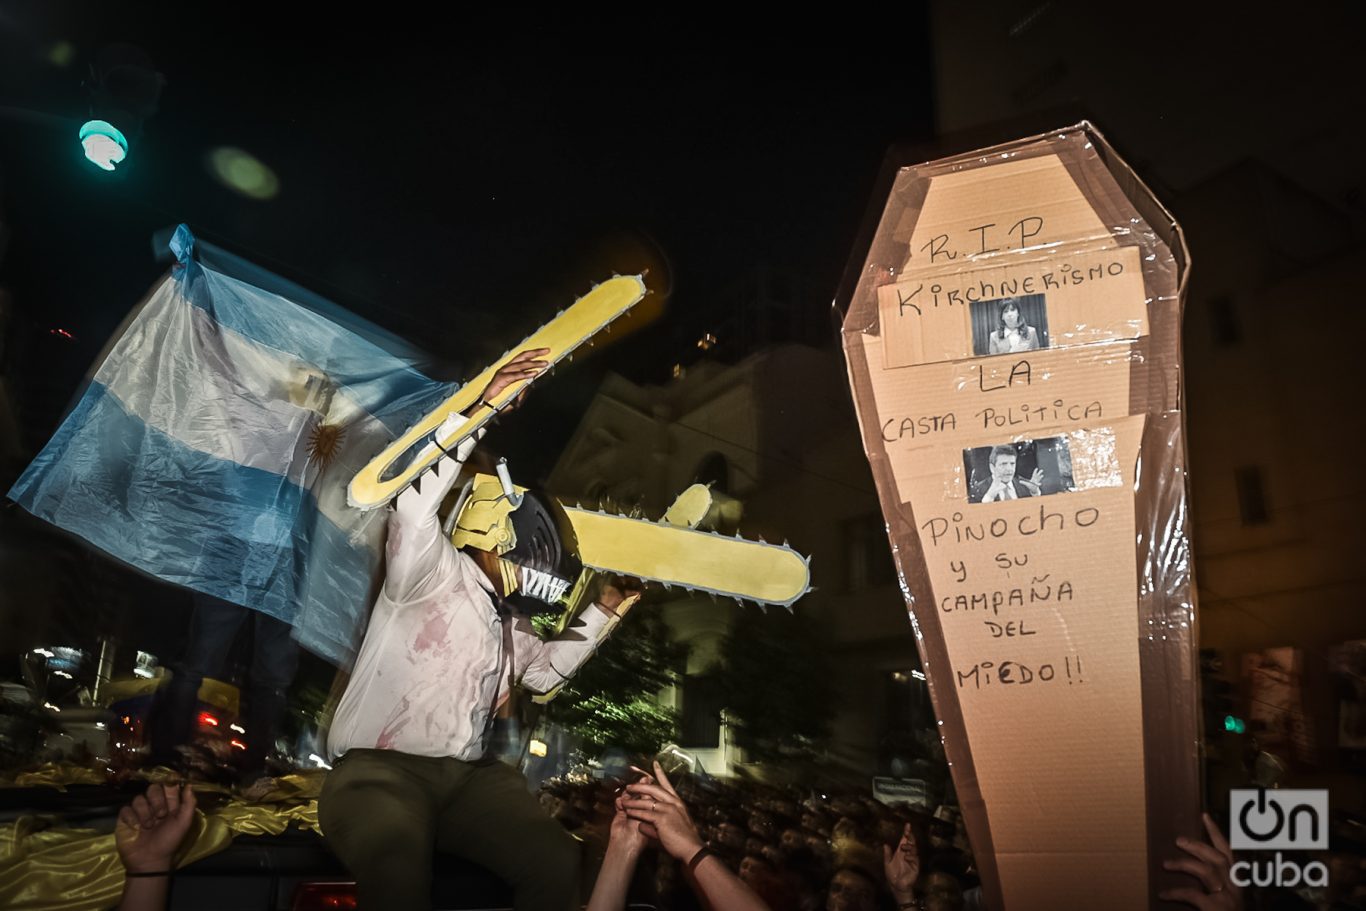 Un hombre disfrazado con una motosierra ensangrentada y un sarcófago en los festejos por la victoria presidencial de Milei. Foto: Kaloian.